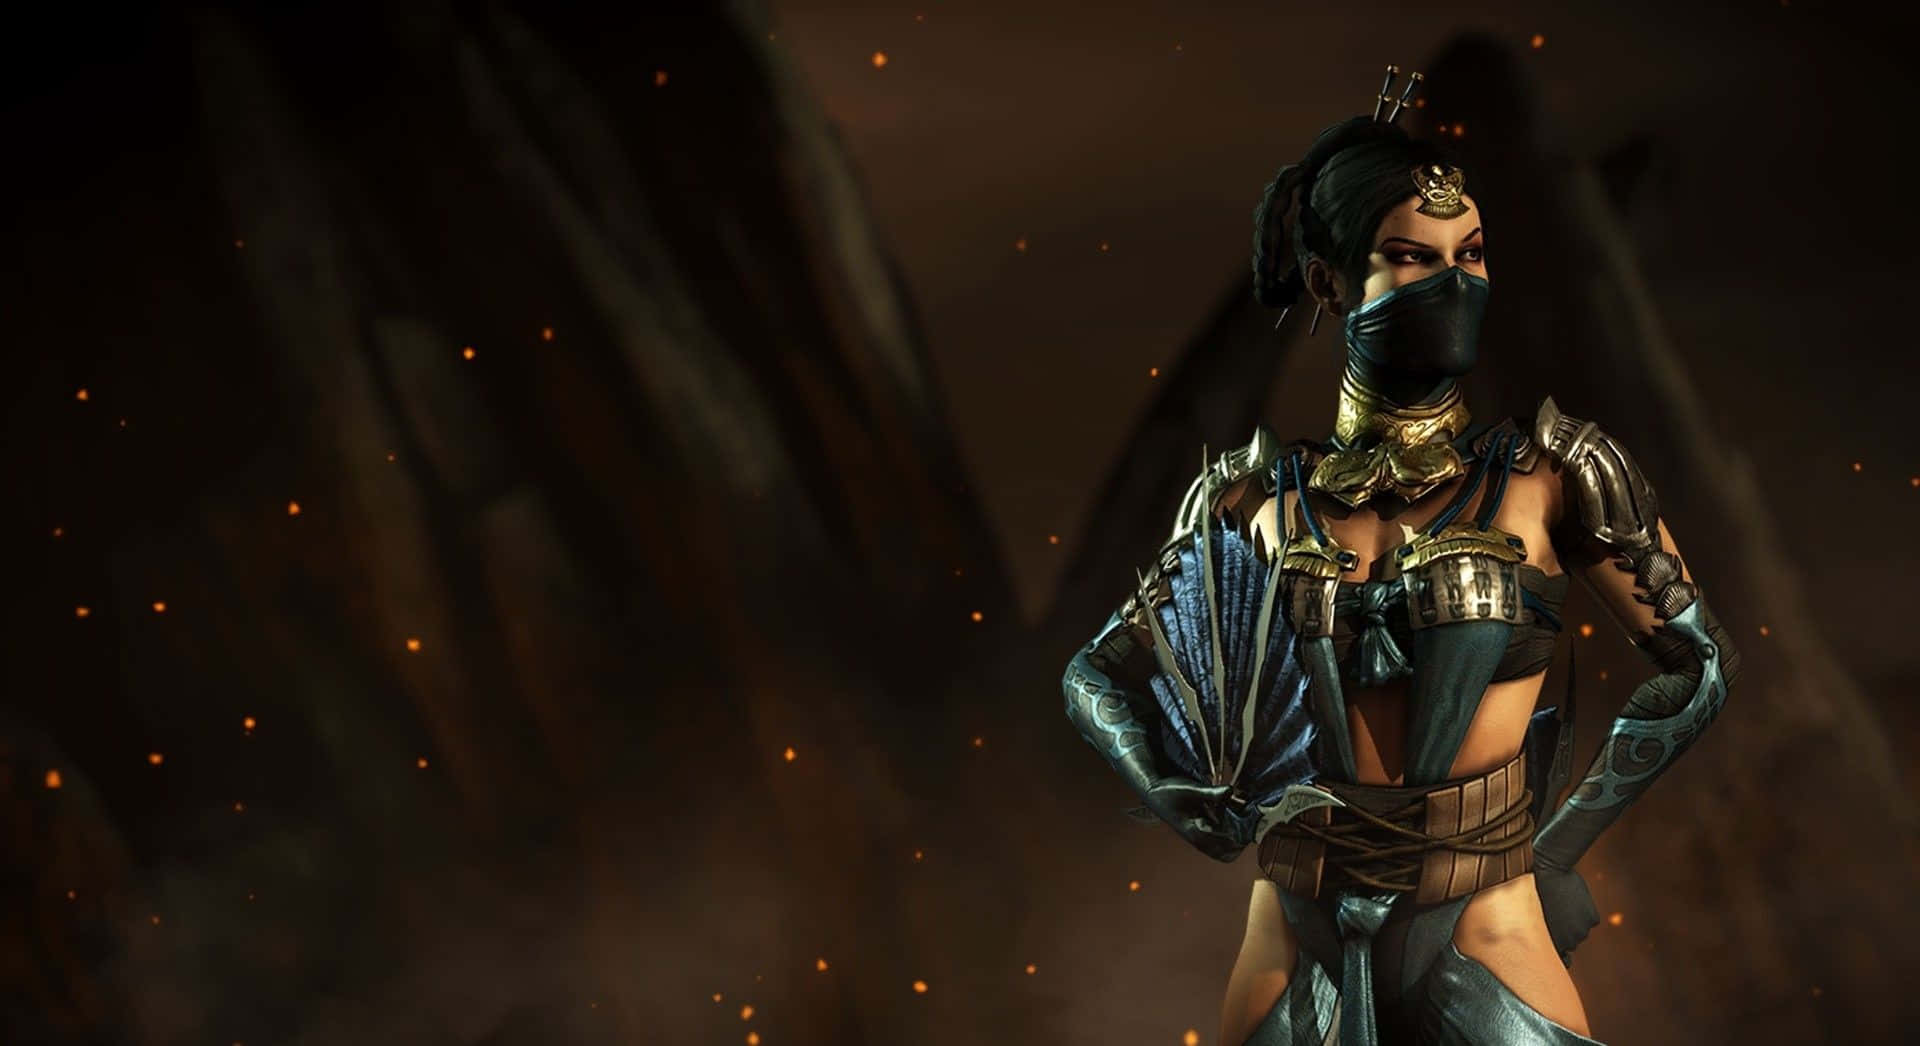 Kitana Reigning Supreme in Mortal Kombat Wallpaper